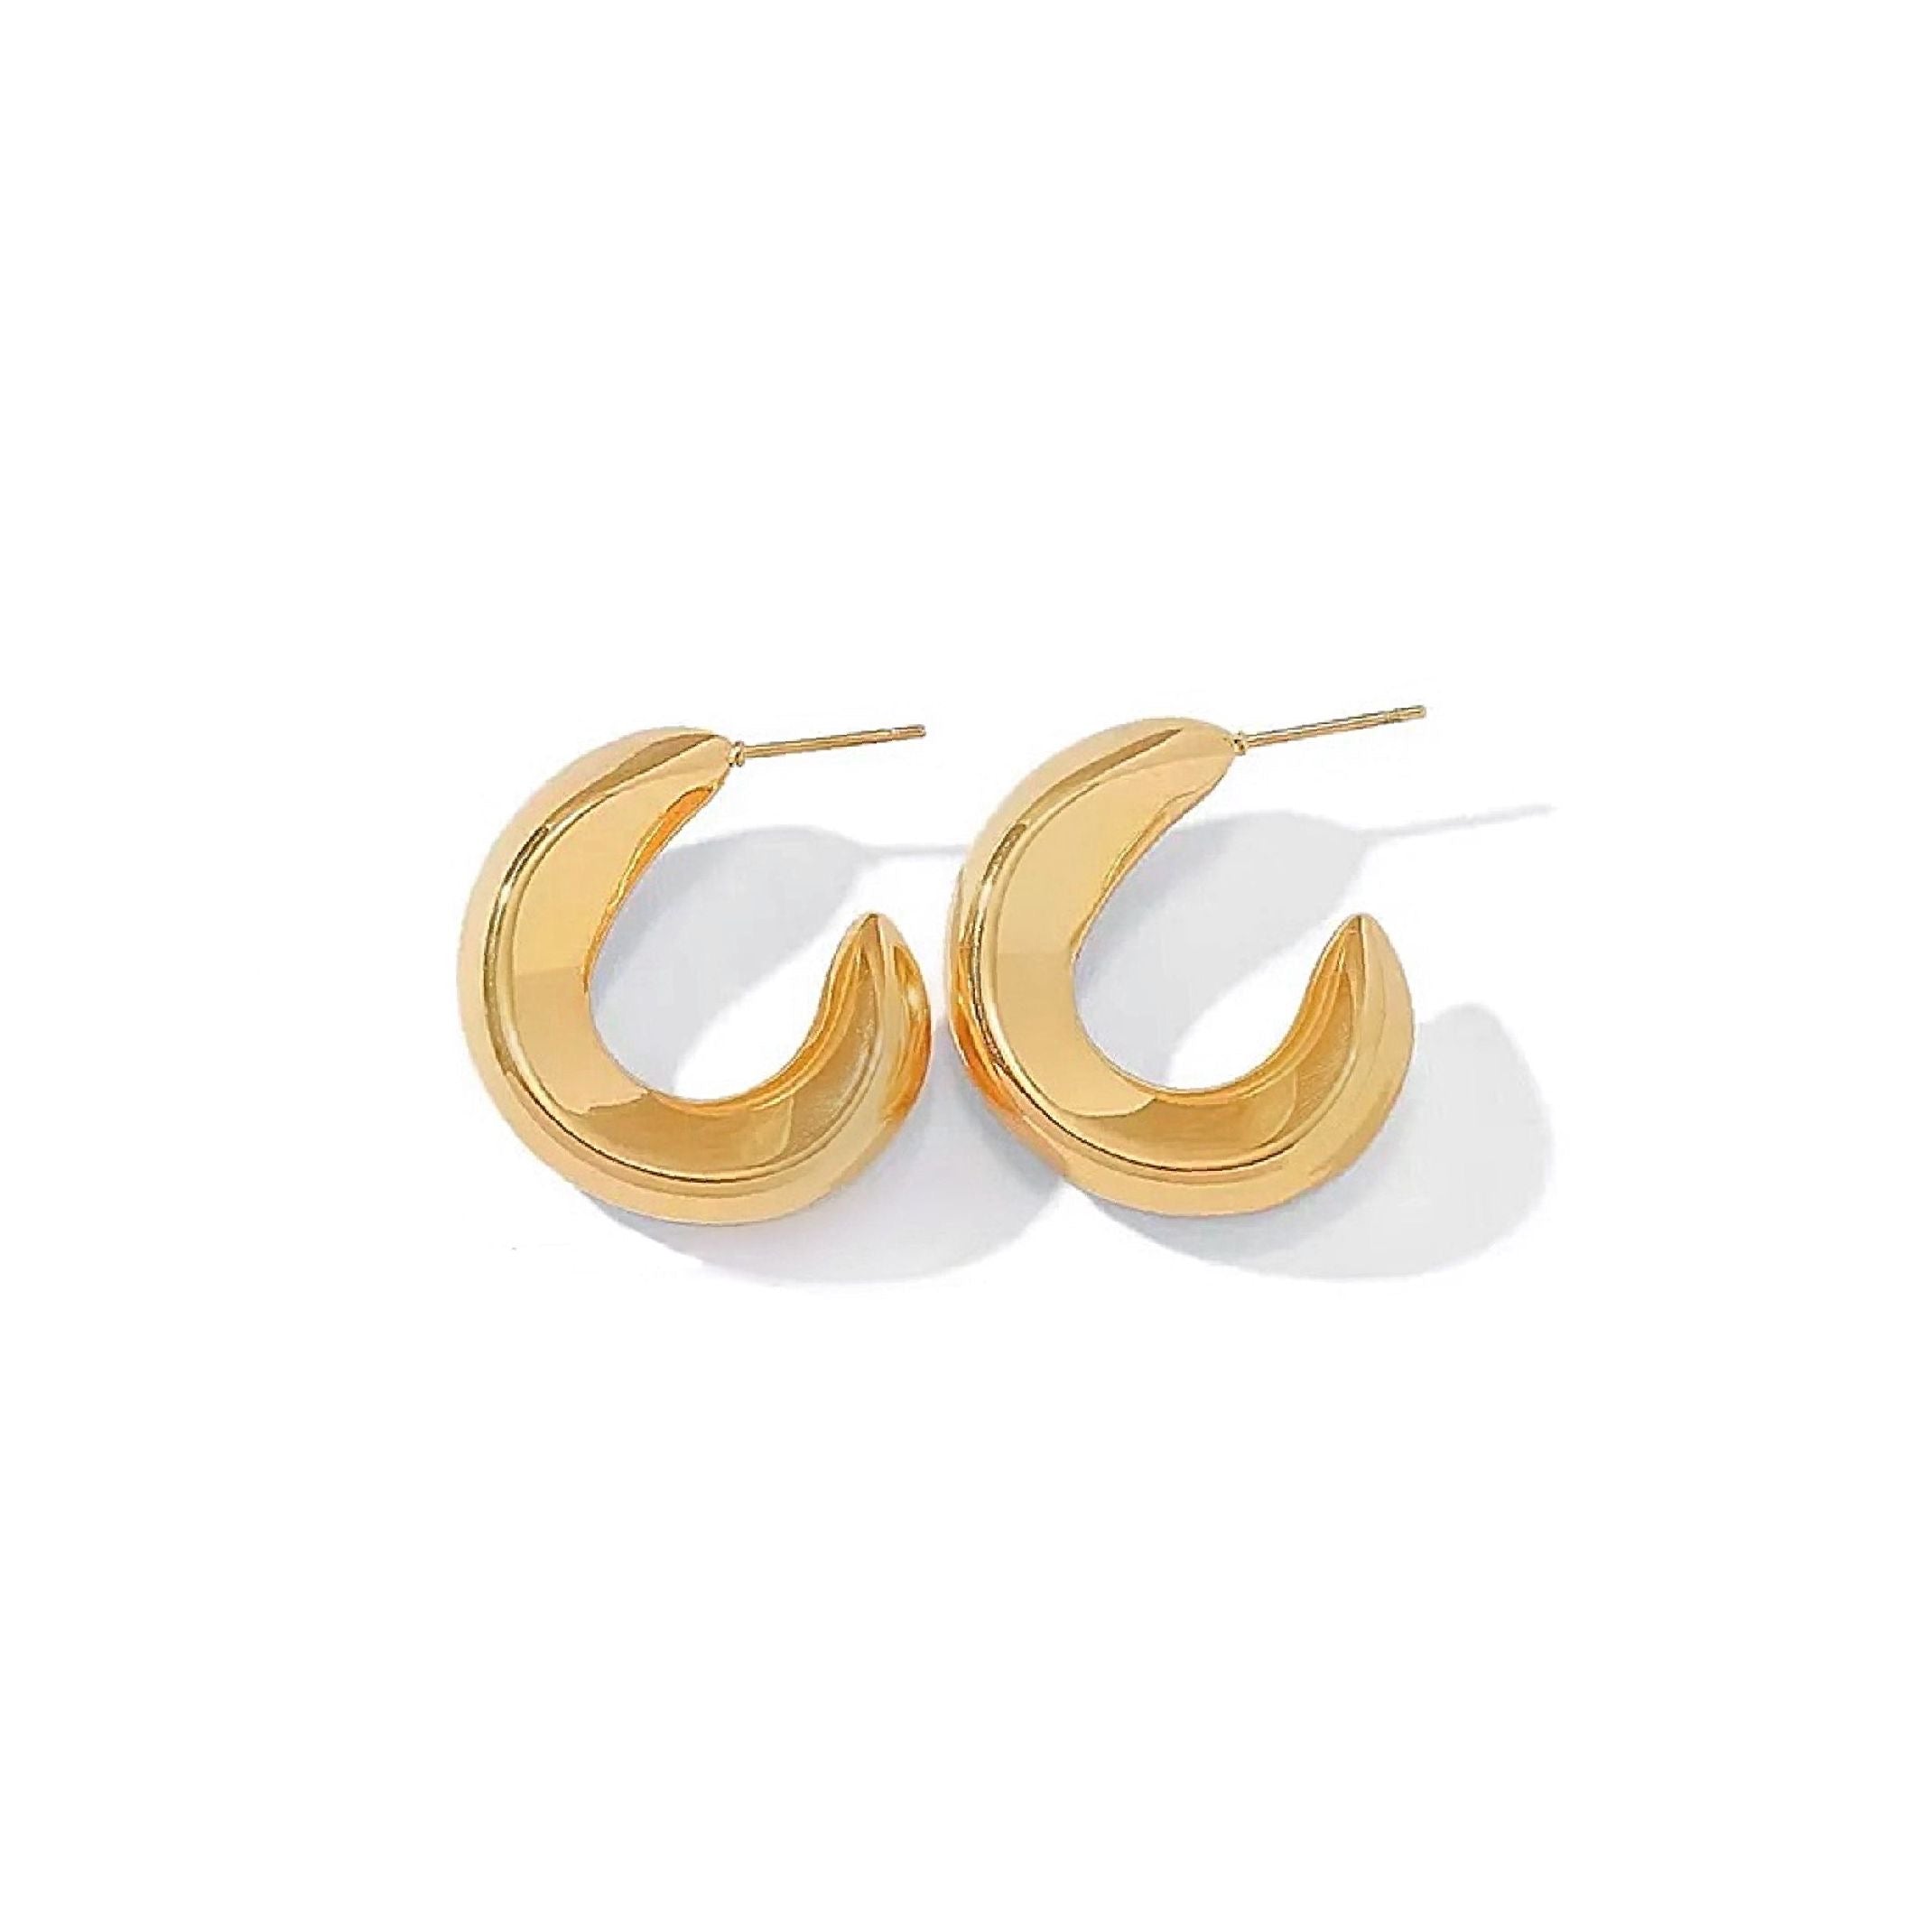 Chunky gold hoop earrings 